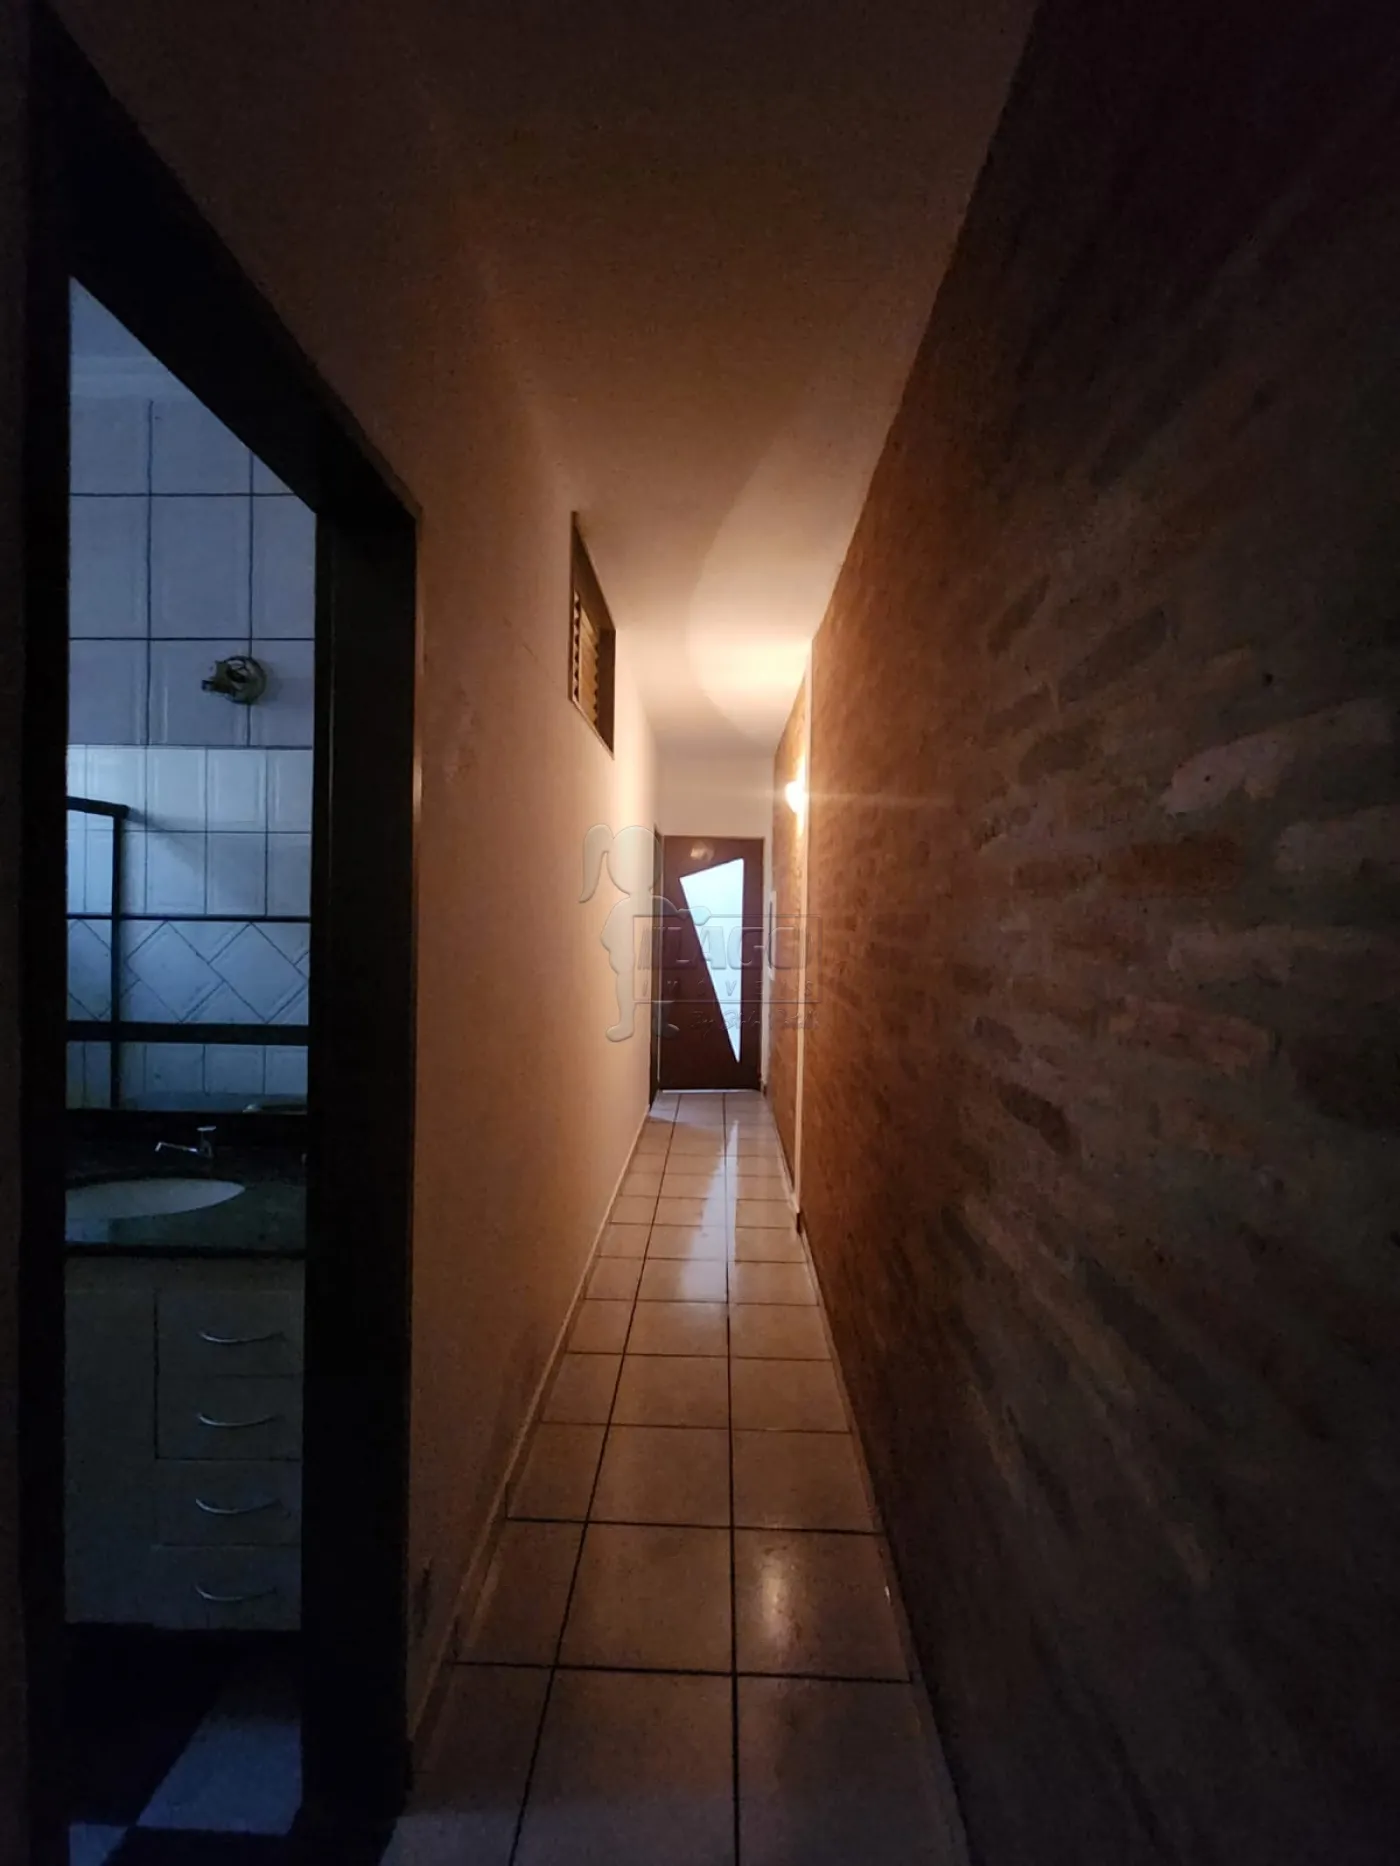 Comprar Casa / Padrão em Ribeirão Preto R$ 430.000,00 - Foto 13